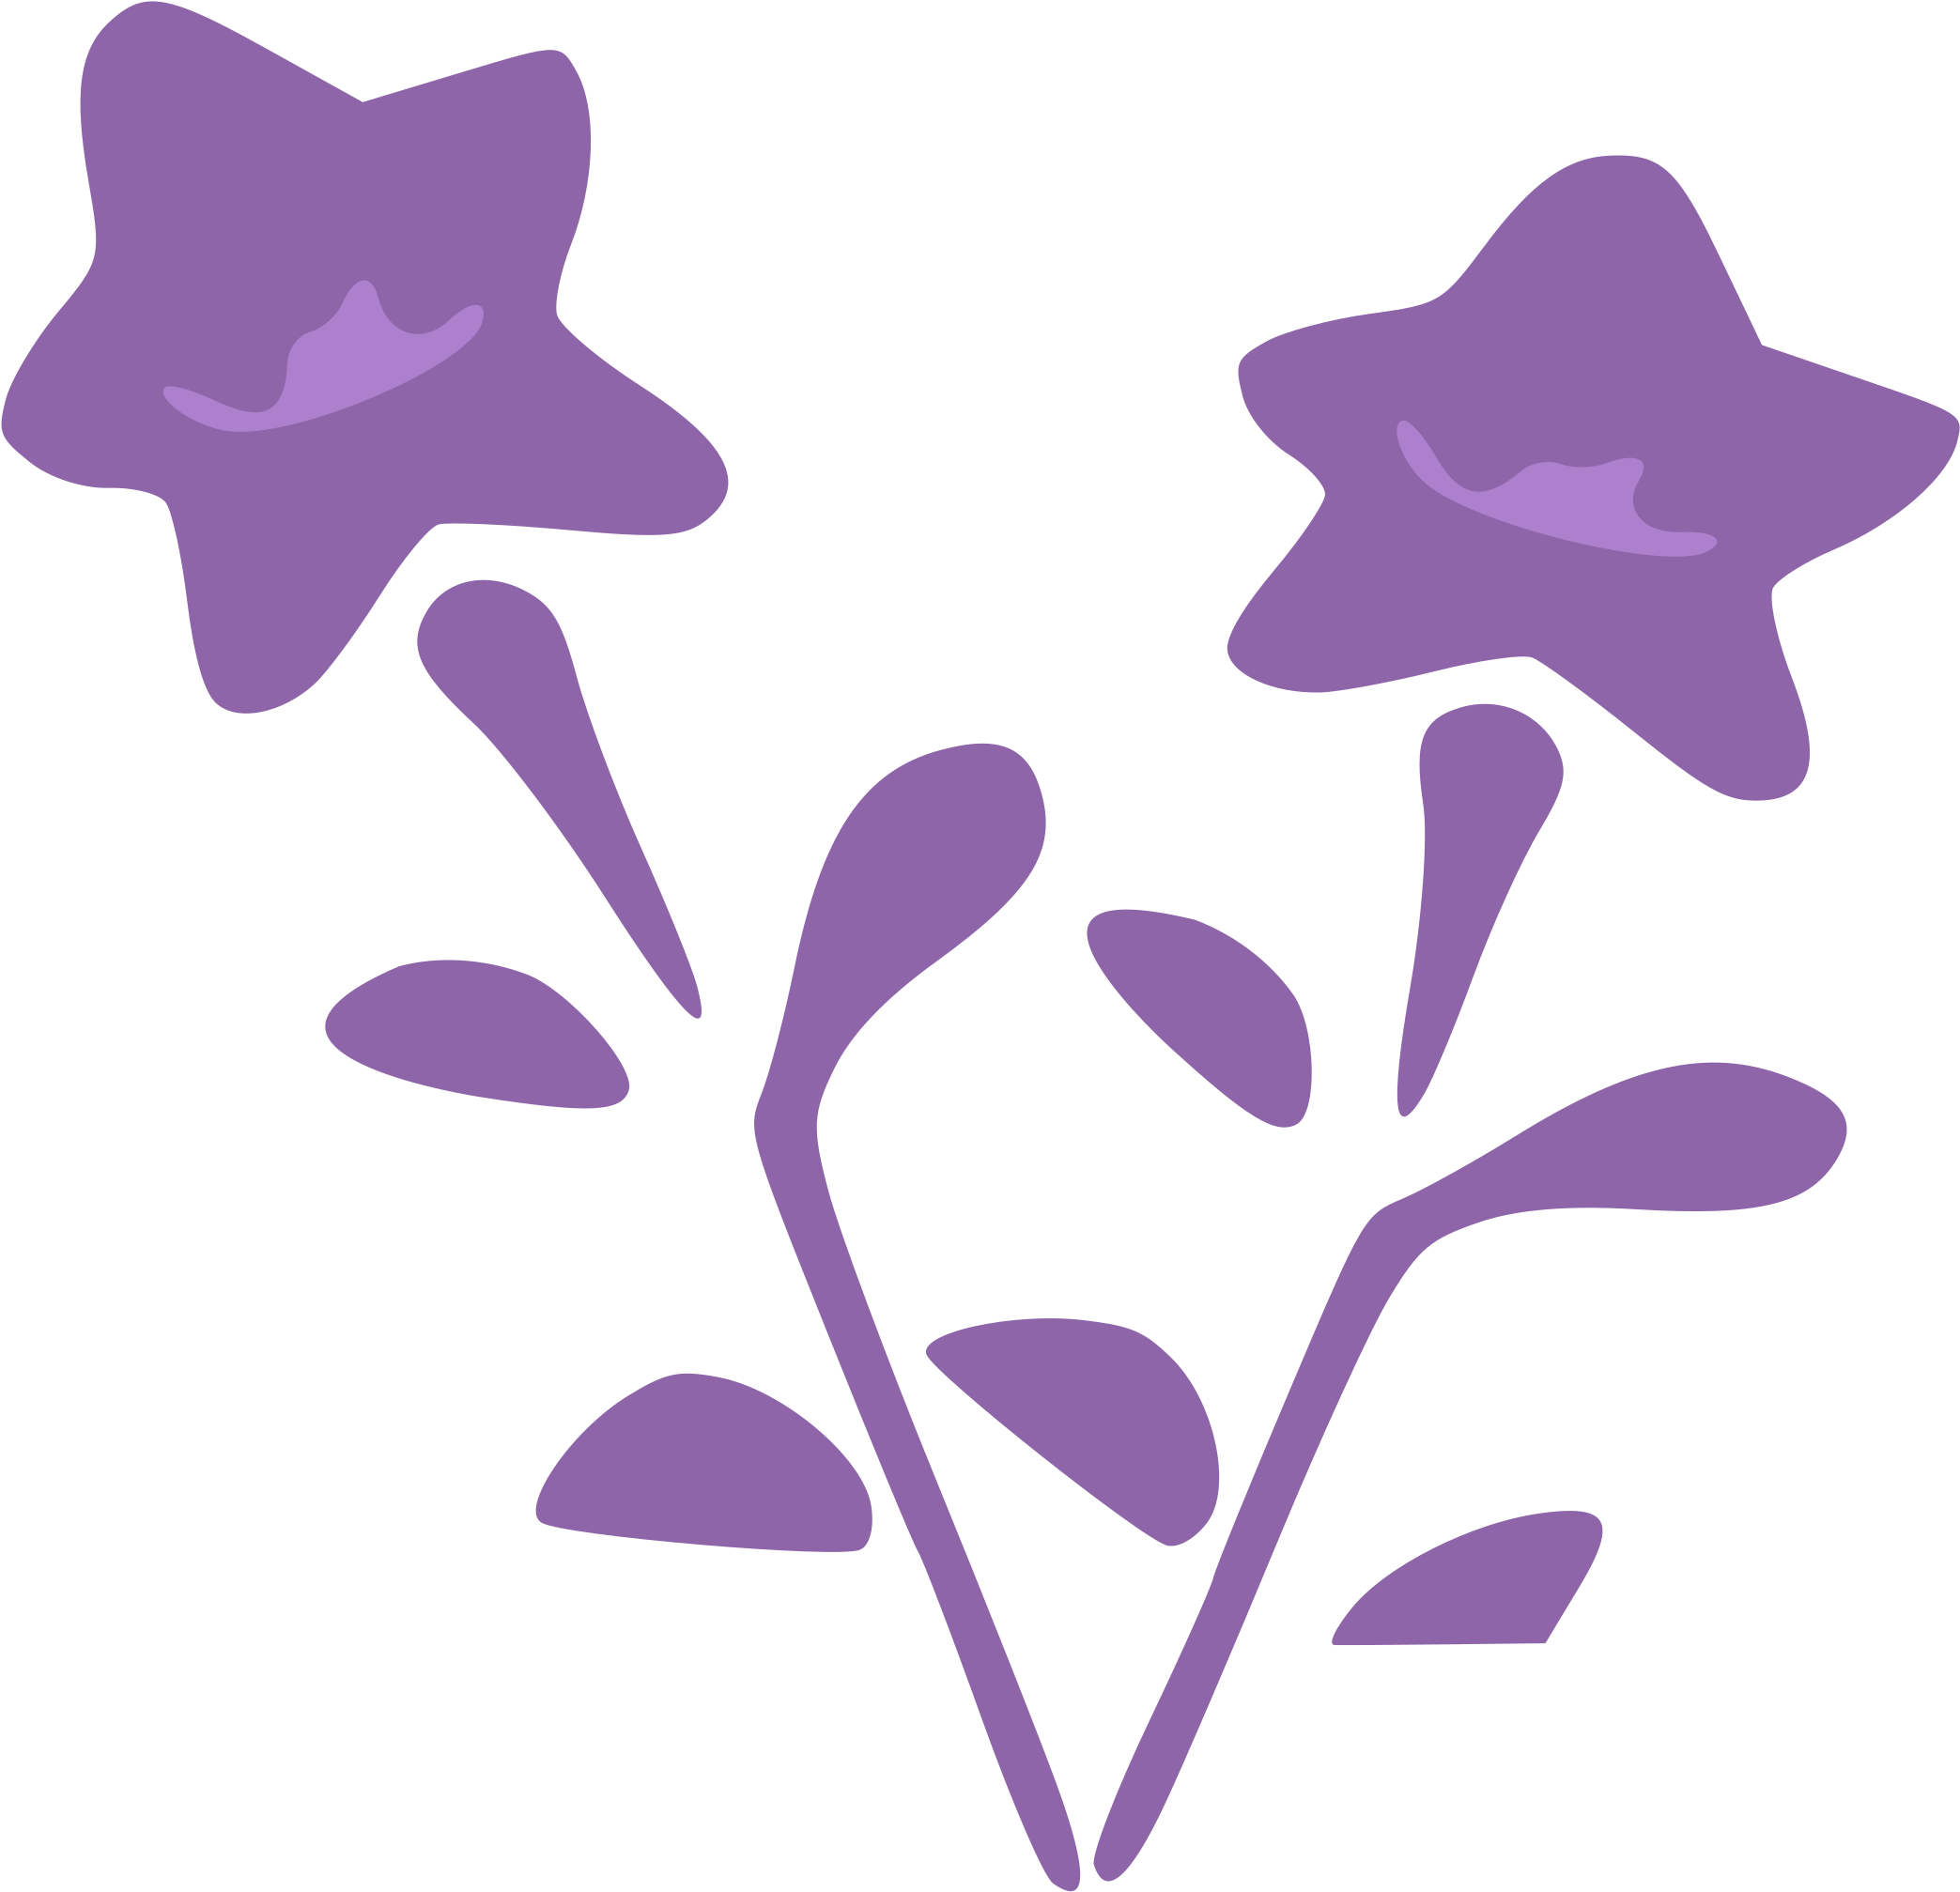 Free Photos > Public Domain Images > Purple Flowers - Purple Flower Clip Art (2400x2400)